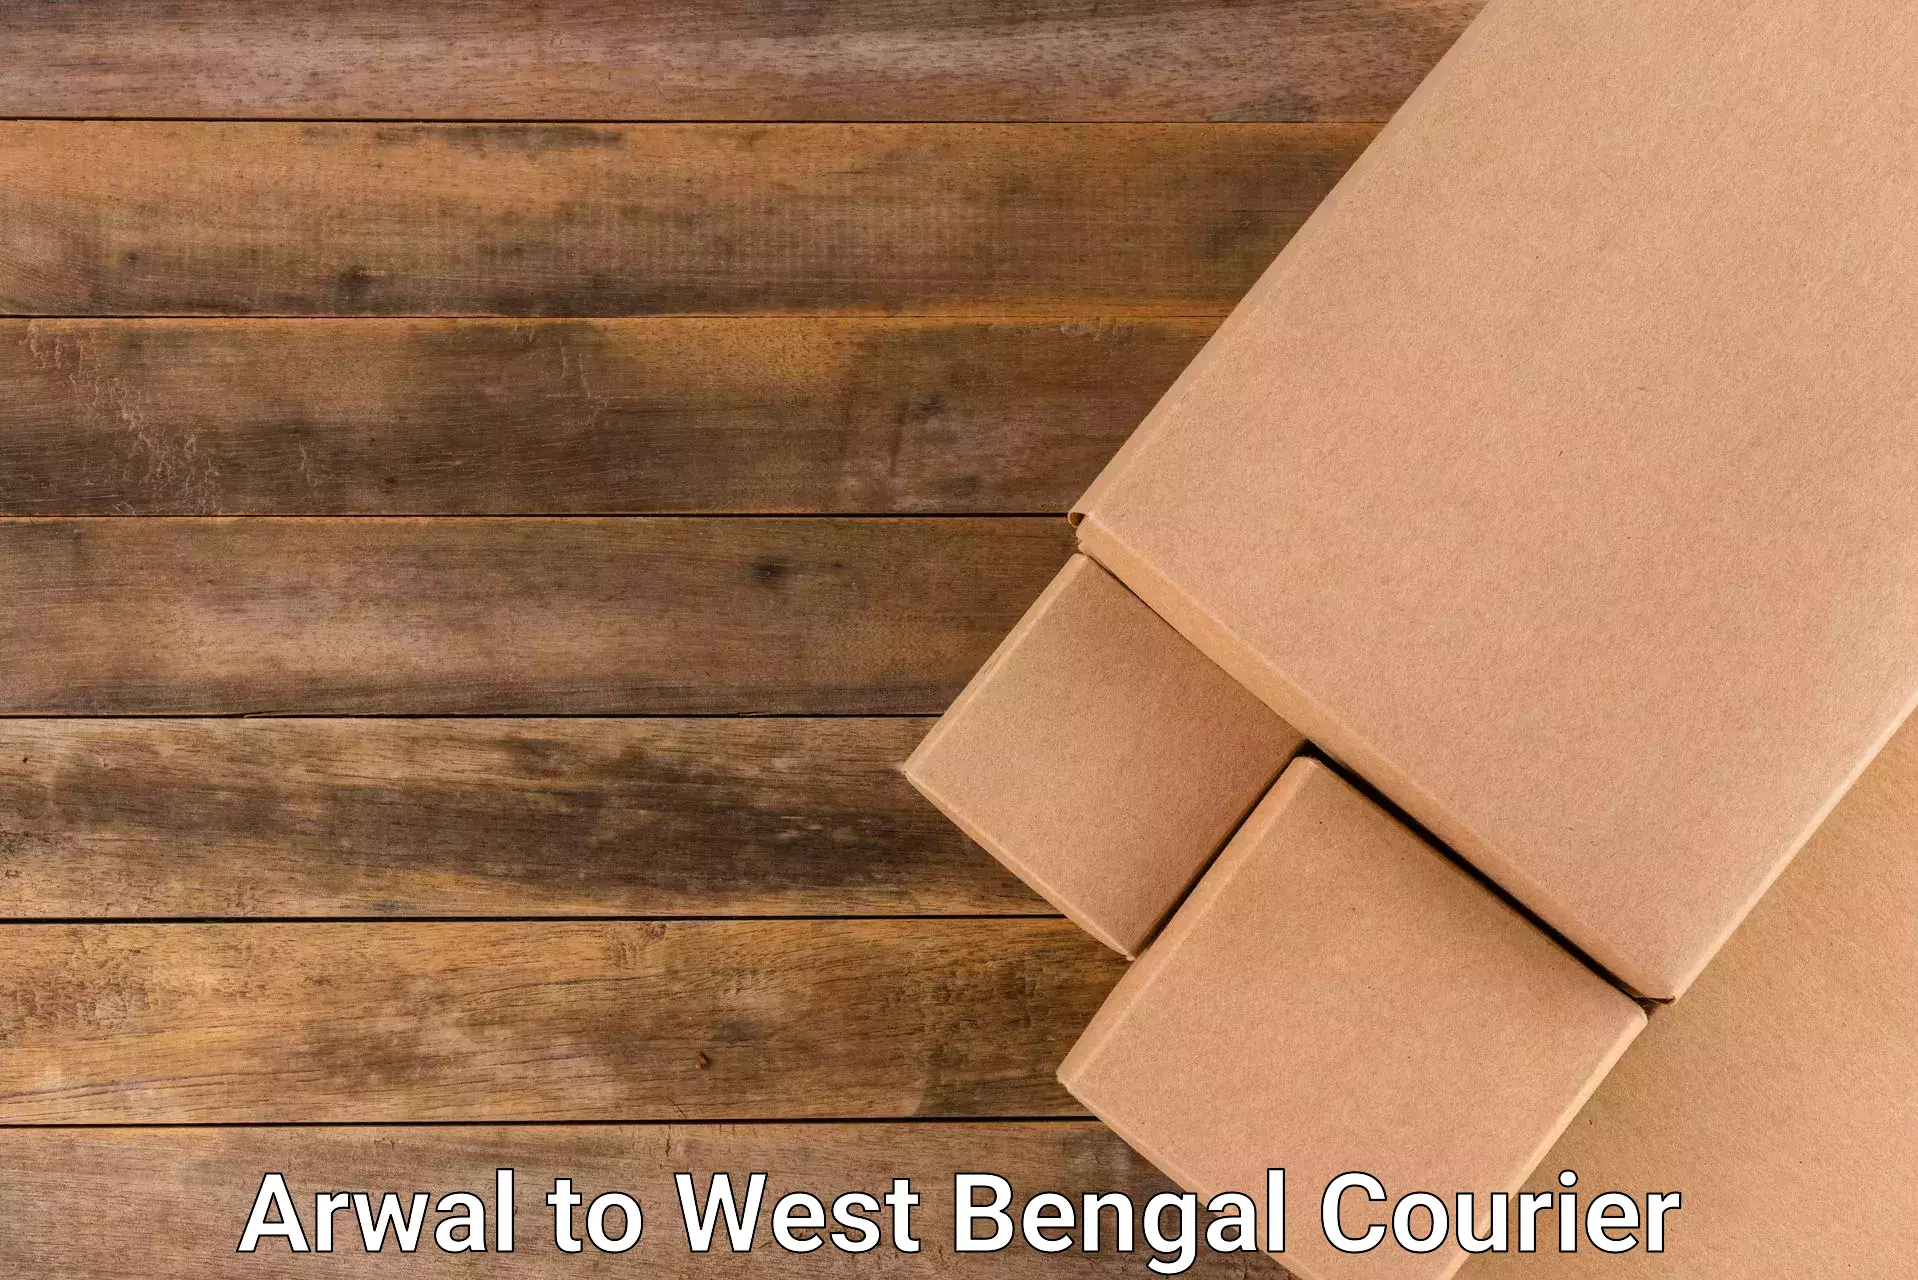 Efficient logistics management Arwal to Basirhat